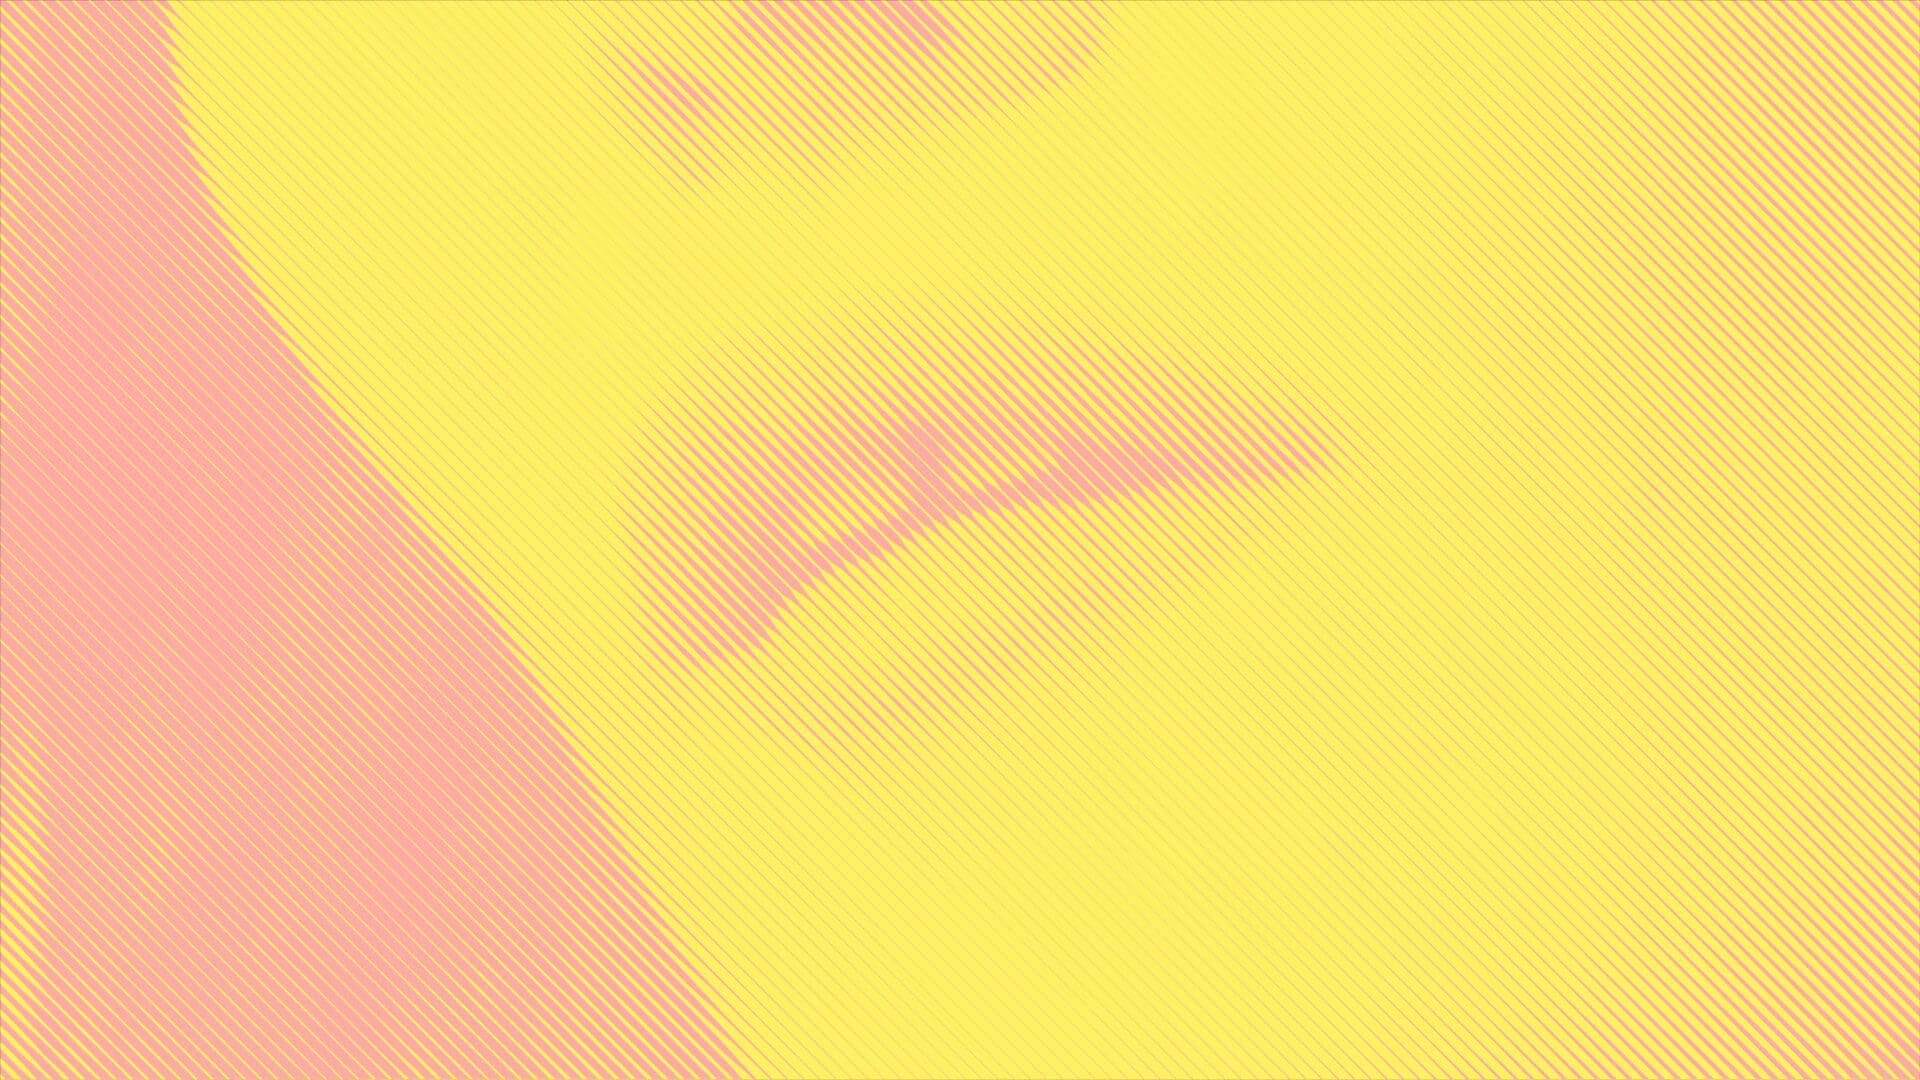 images tramées rose et jaune issues du clip de Vanessa Paradis "vague a l'âme soeur"d'Anne Rohart et Helena Ichbiah